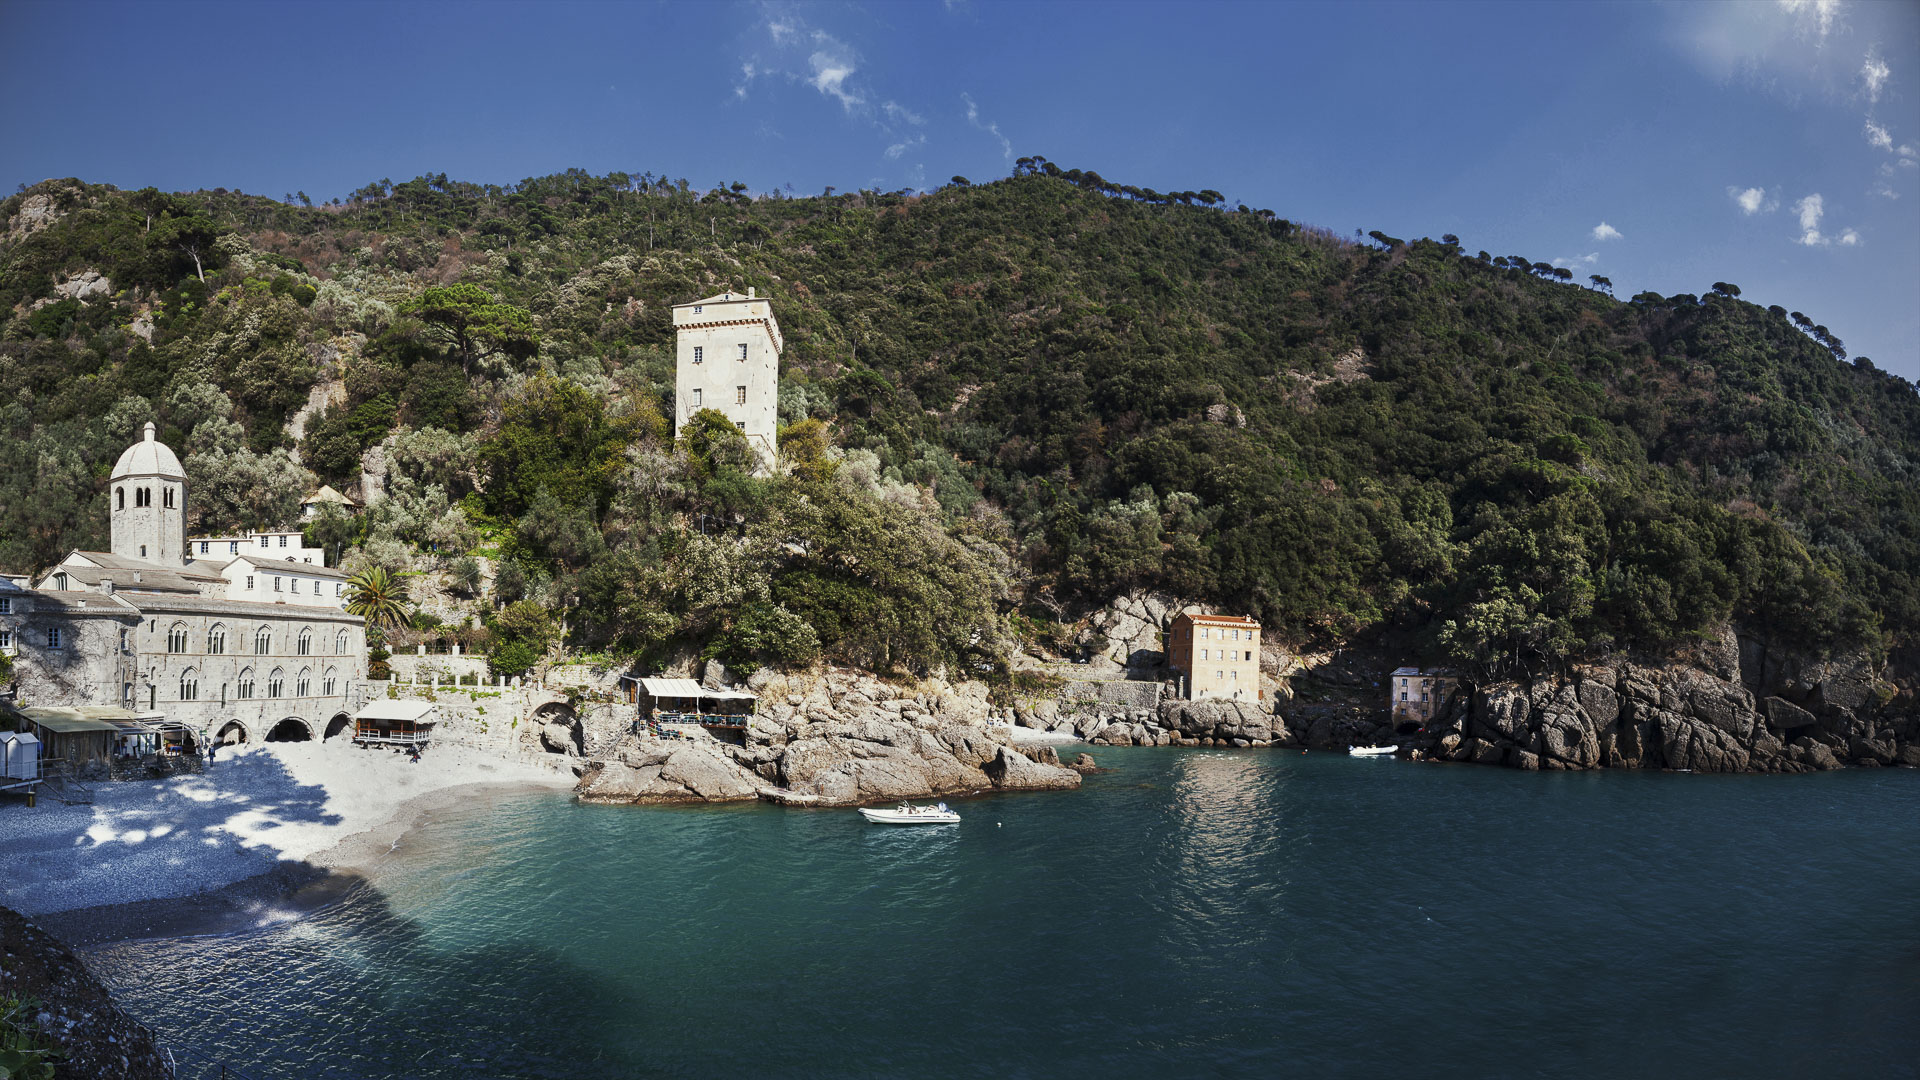 Boat tour and daily charter in Portofino Escursioni e noleggio barca Portofino